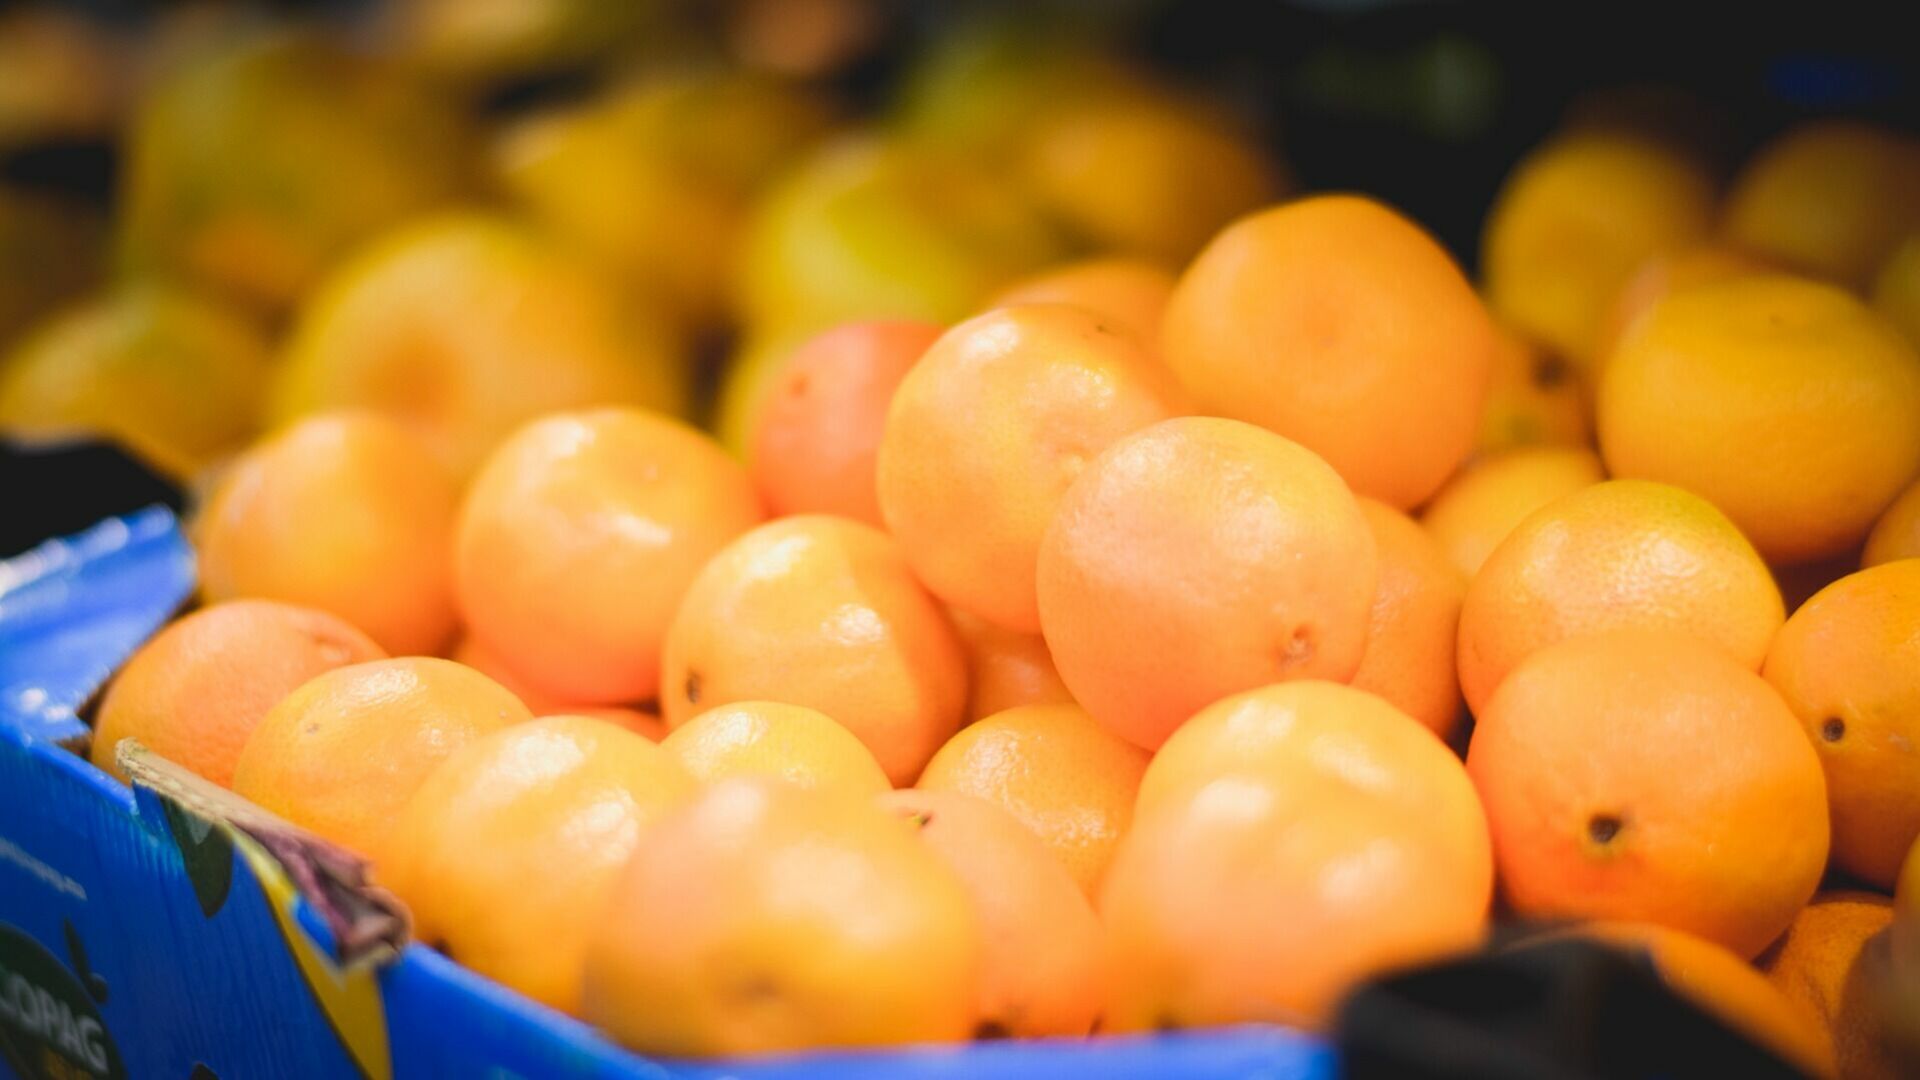 Муркотт - очень популярный в России кисло-сладкий гибрид апельсина и мандарина